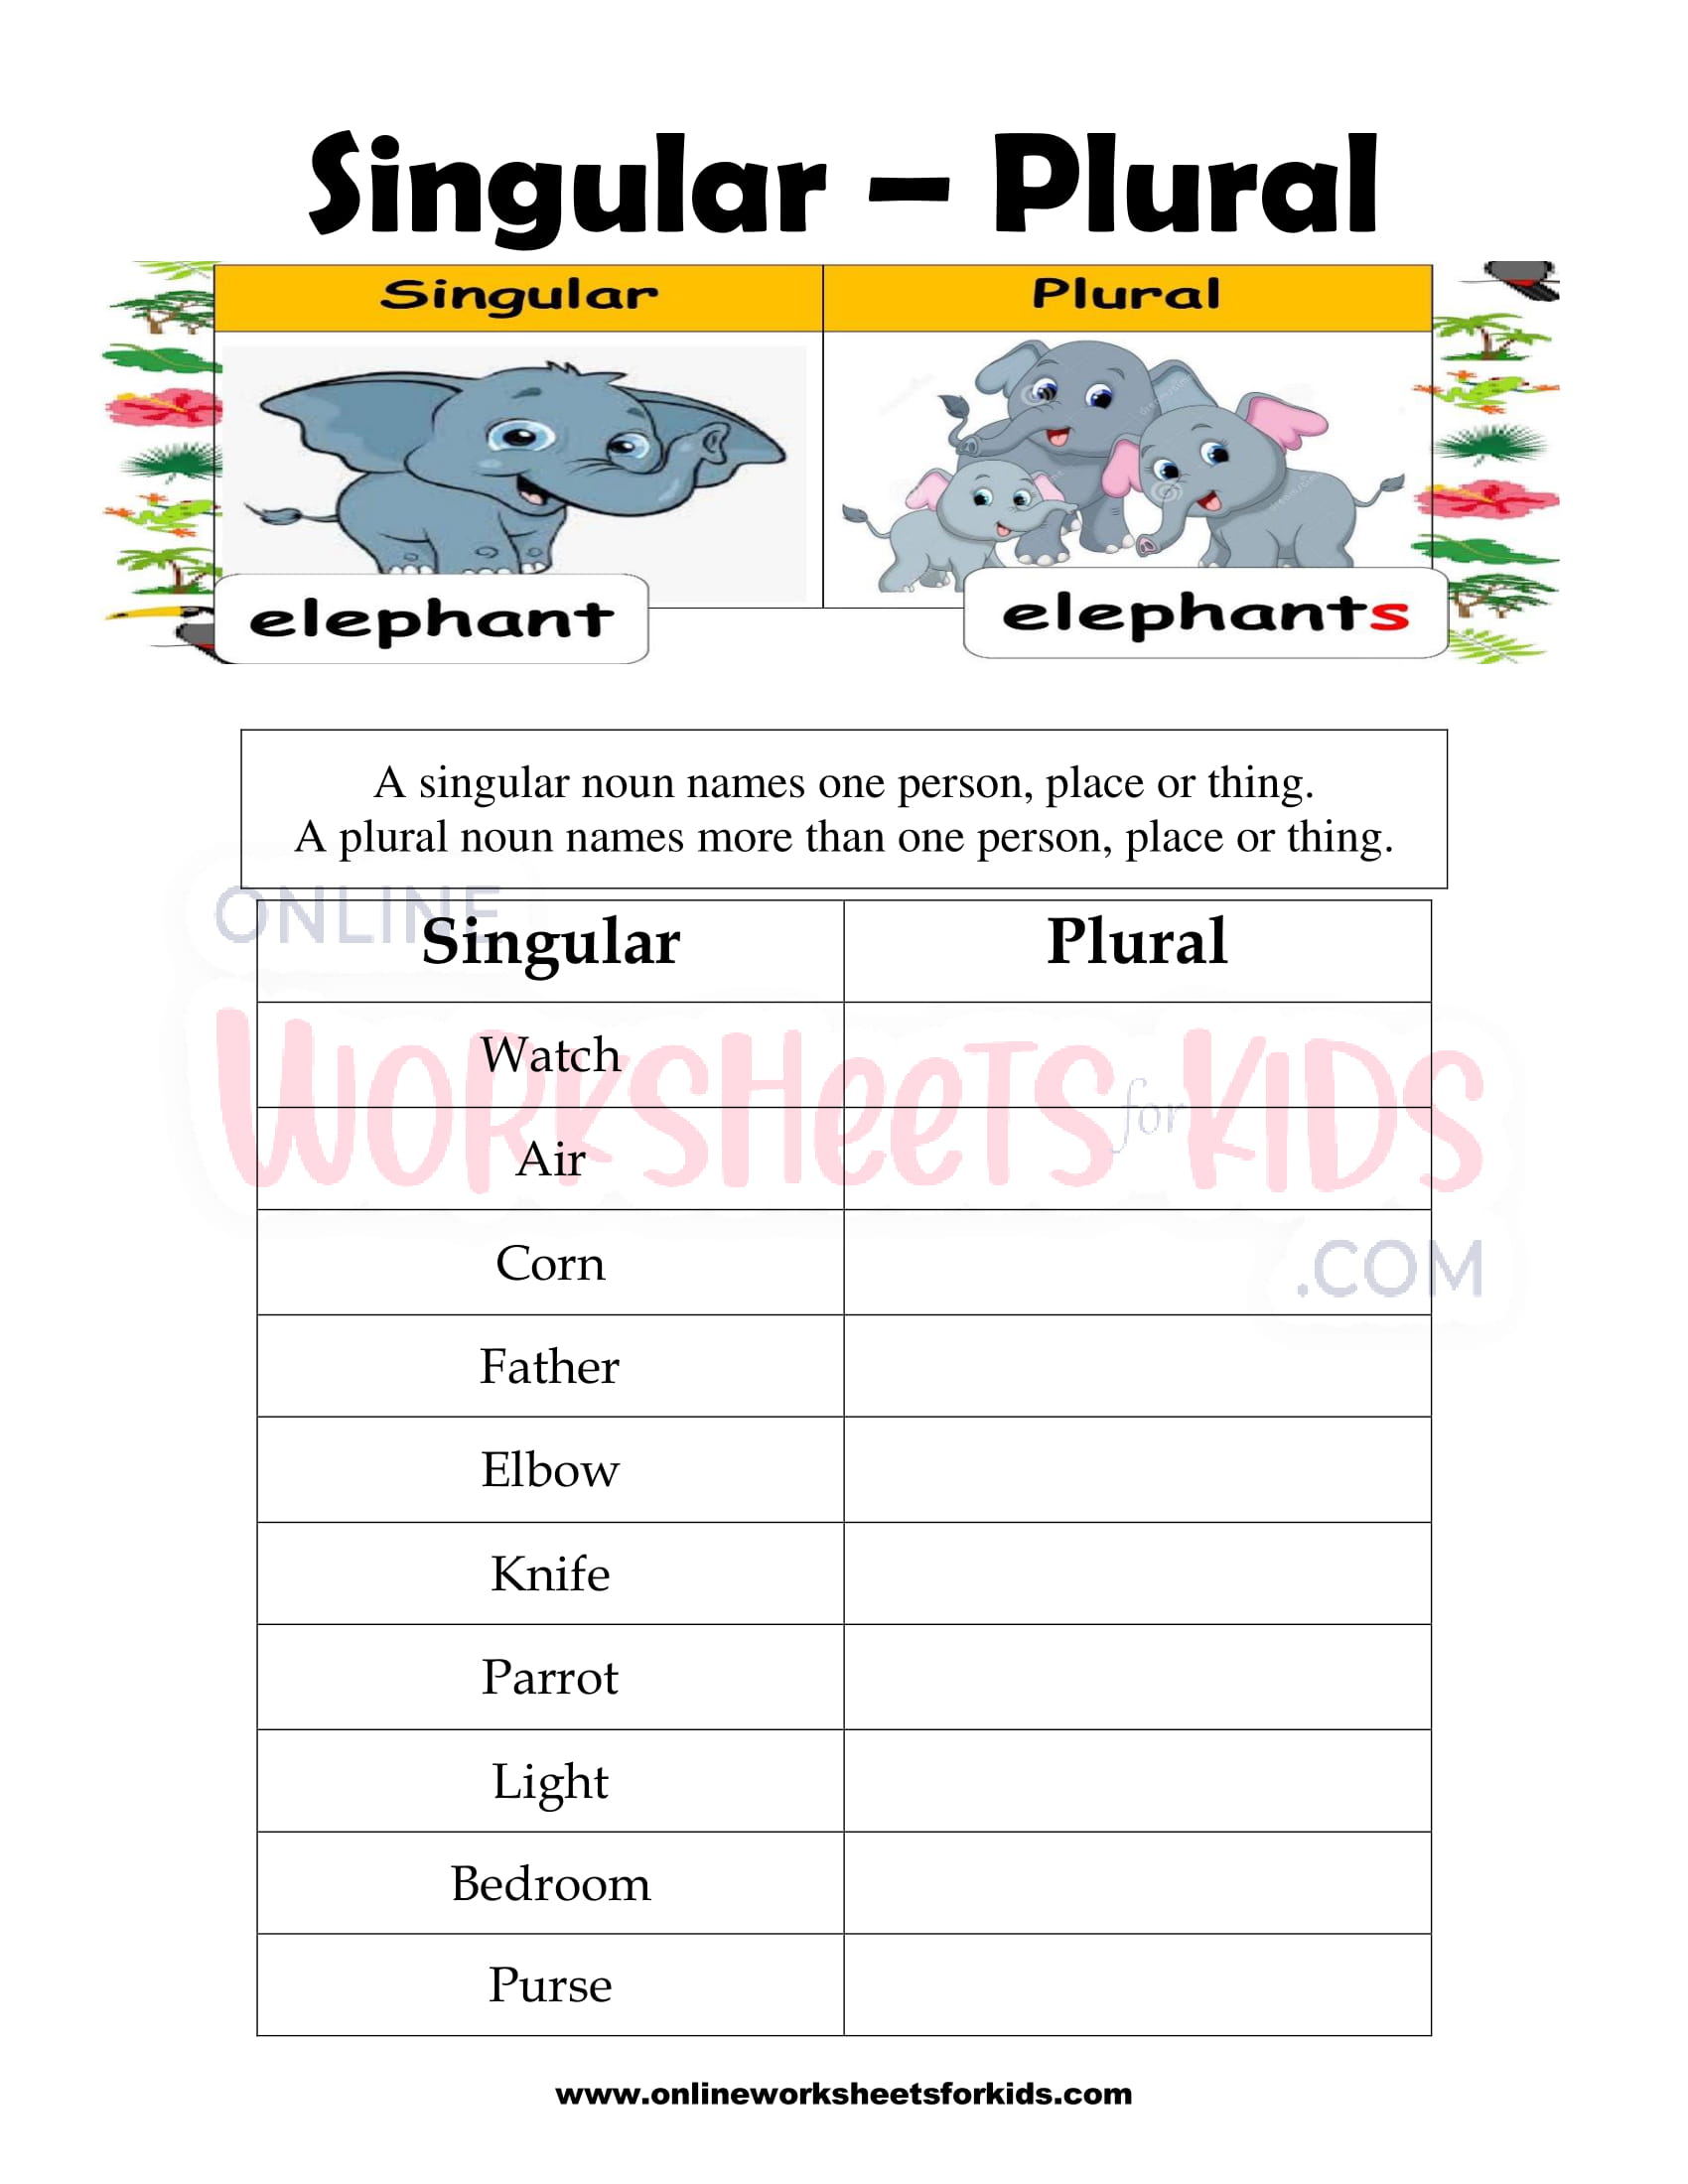 Singular and Plural Nouns Worksheet 20 Throughout Singular And Plural Nouns Worksheet